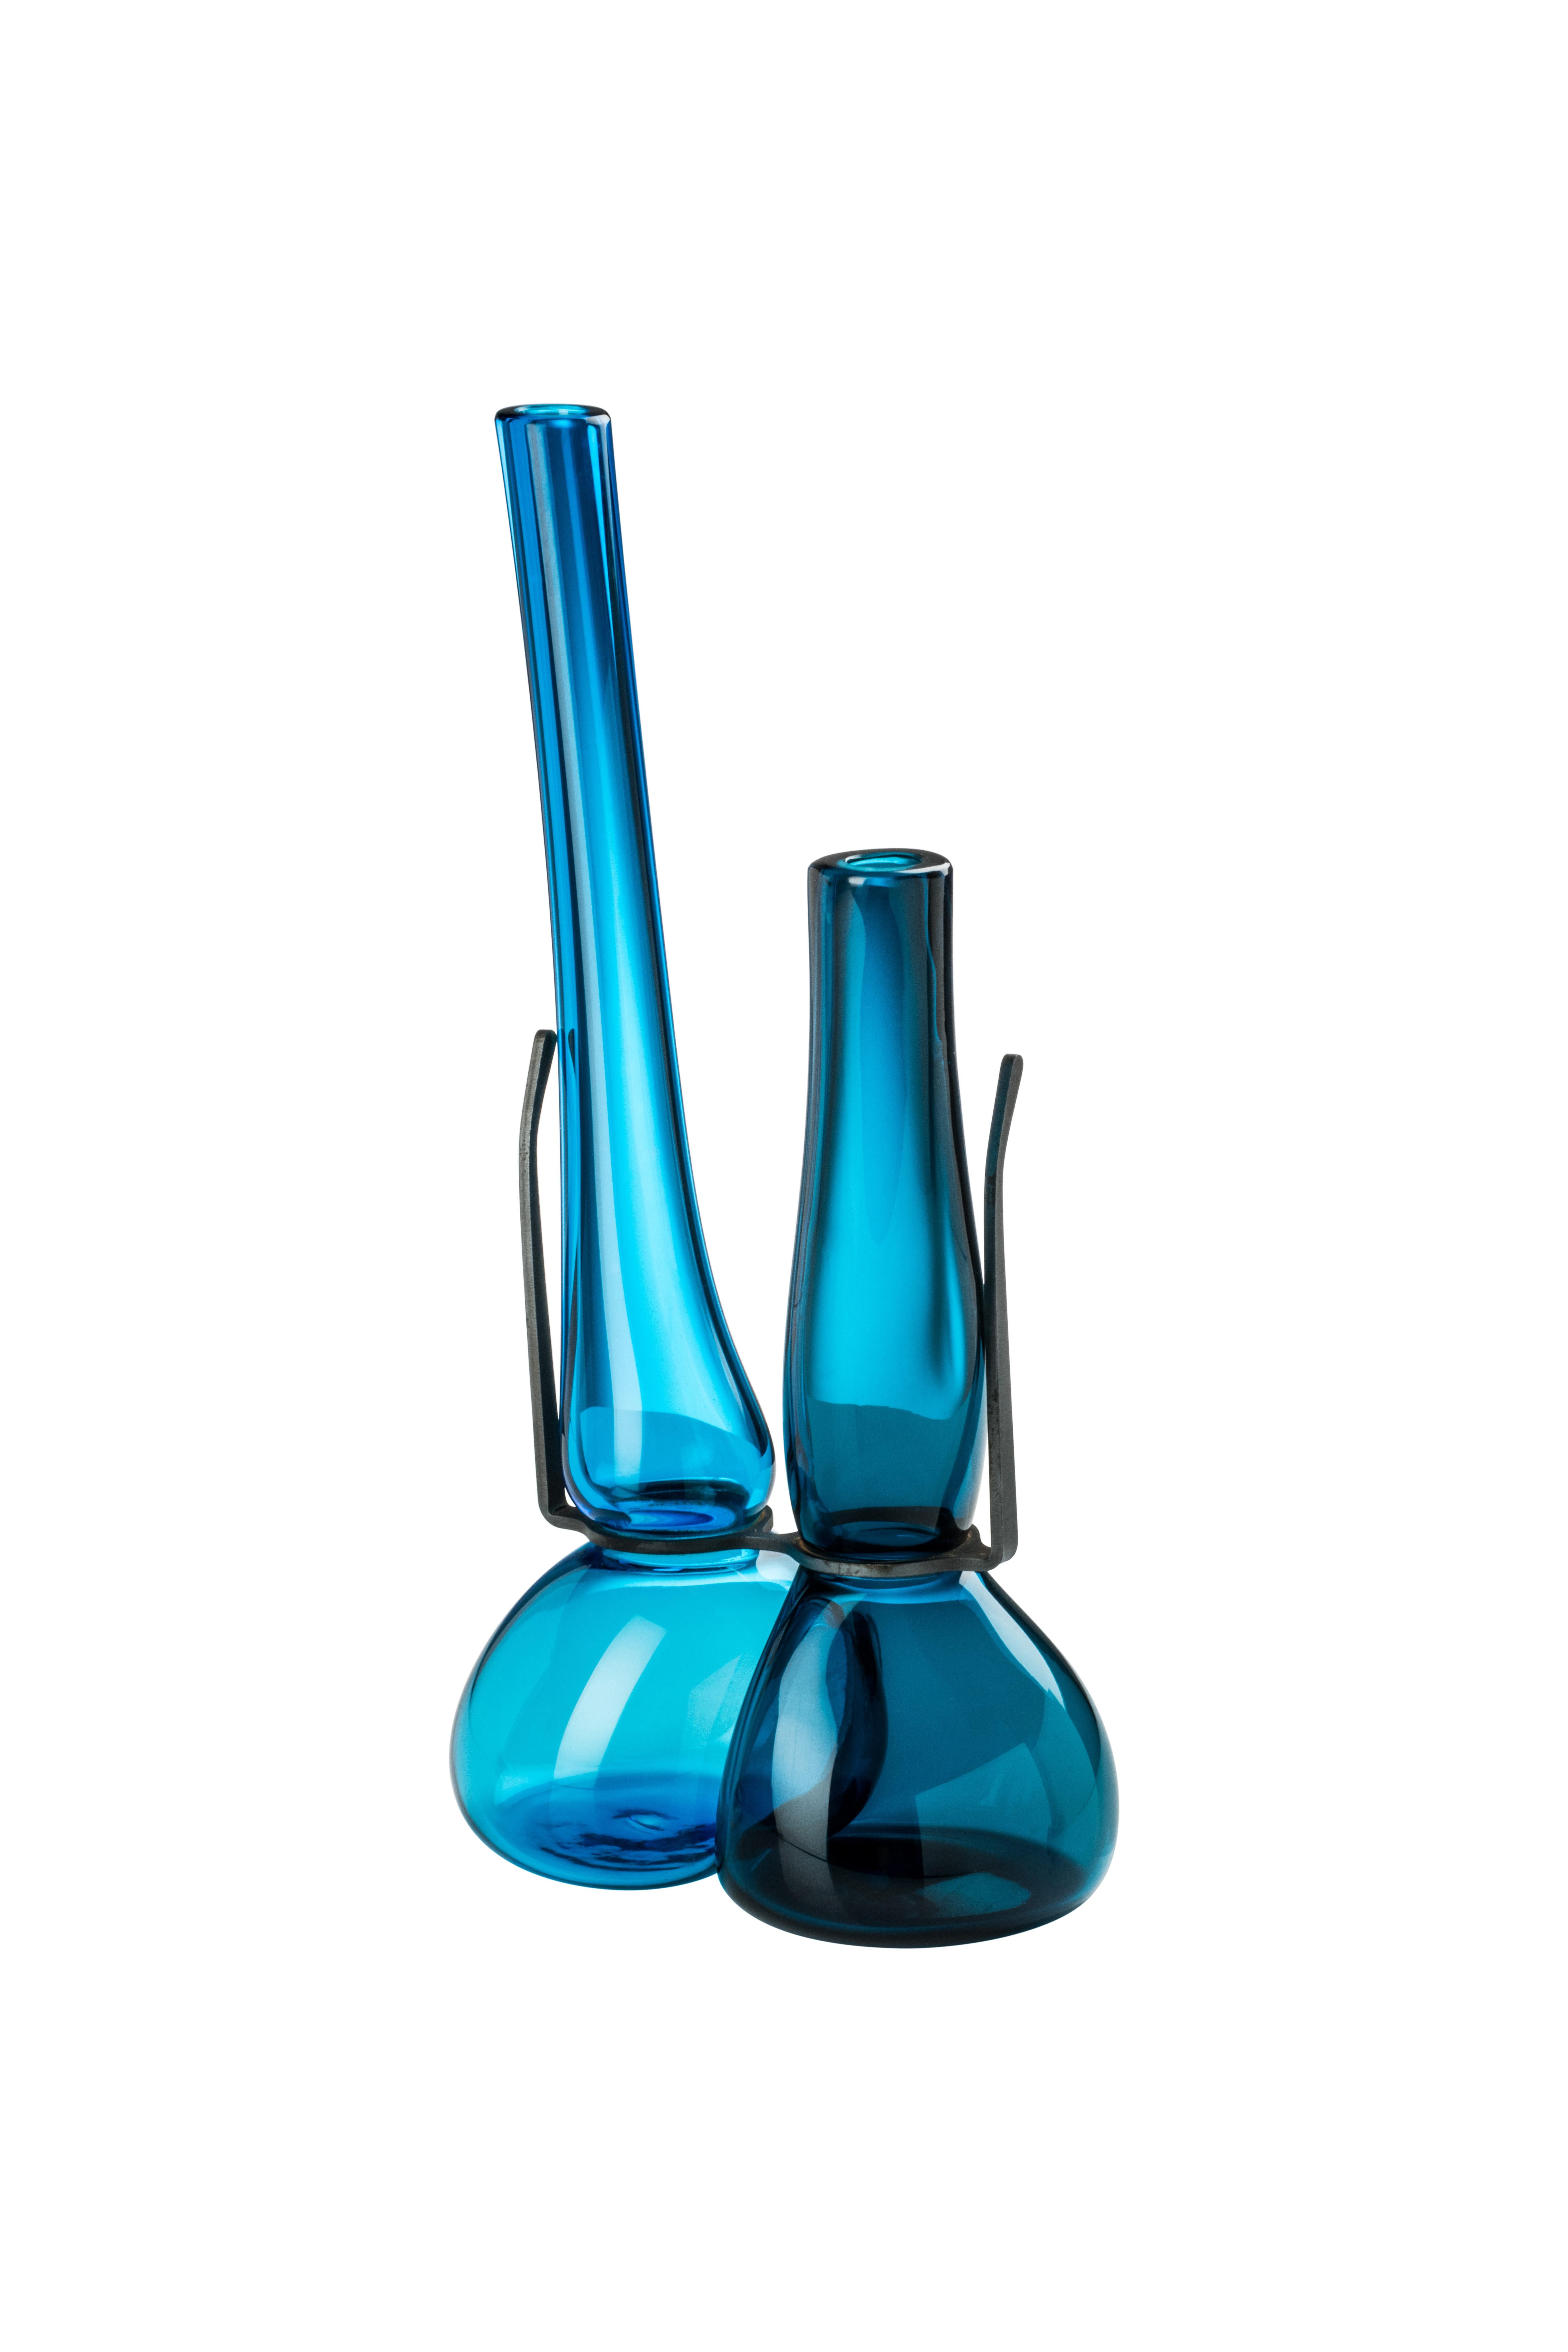 Venini Doppelglasvase in Aquamarin und Horizontblau, entworfen von Ron Arad im Jahr 2018. Perfekt für die Innendekoration als Behälter oder als Schmuckstück für jeden Raum. Auch in anderen Farben auf 1stdibs erhältlich.

Abmessungen: 20 cm